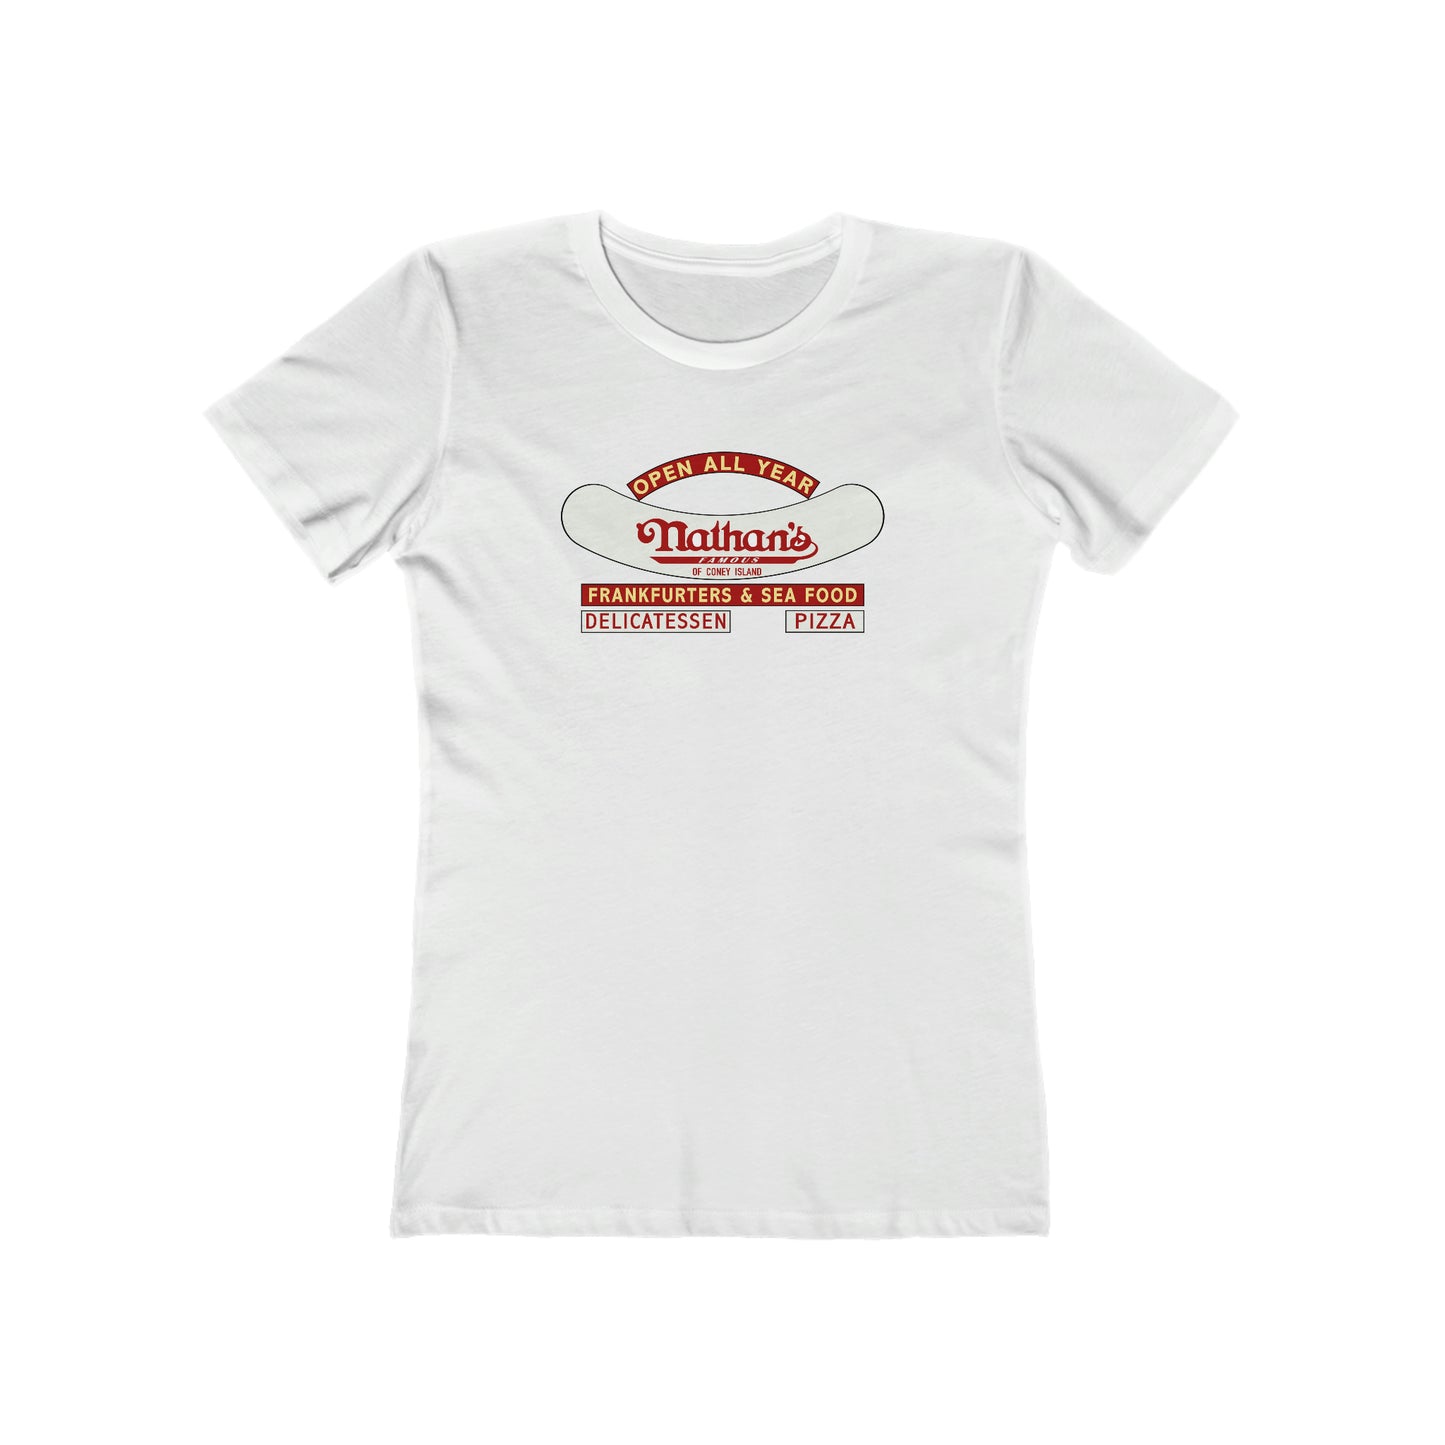 Nathan's - Women's T-Shirt